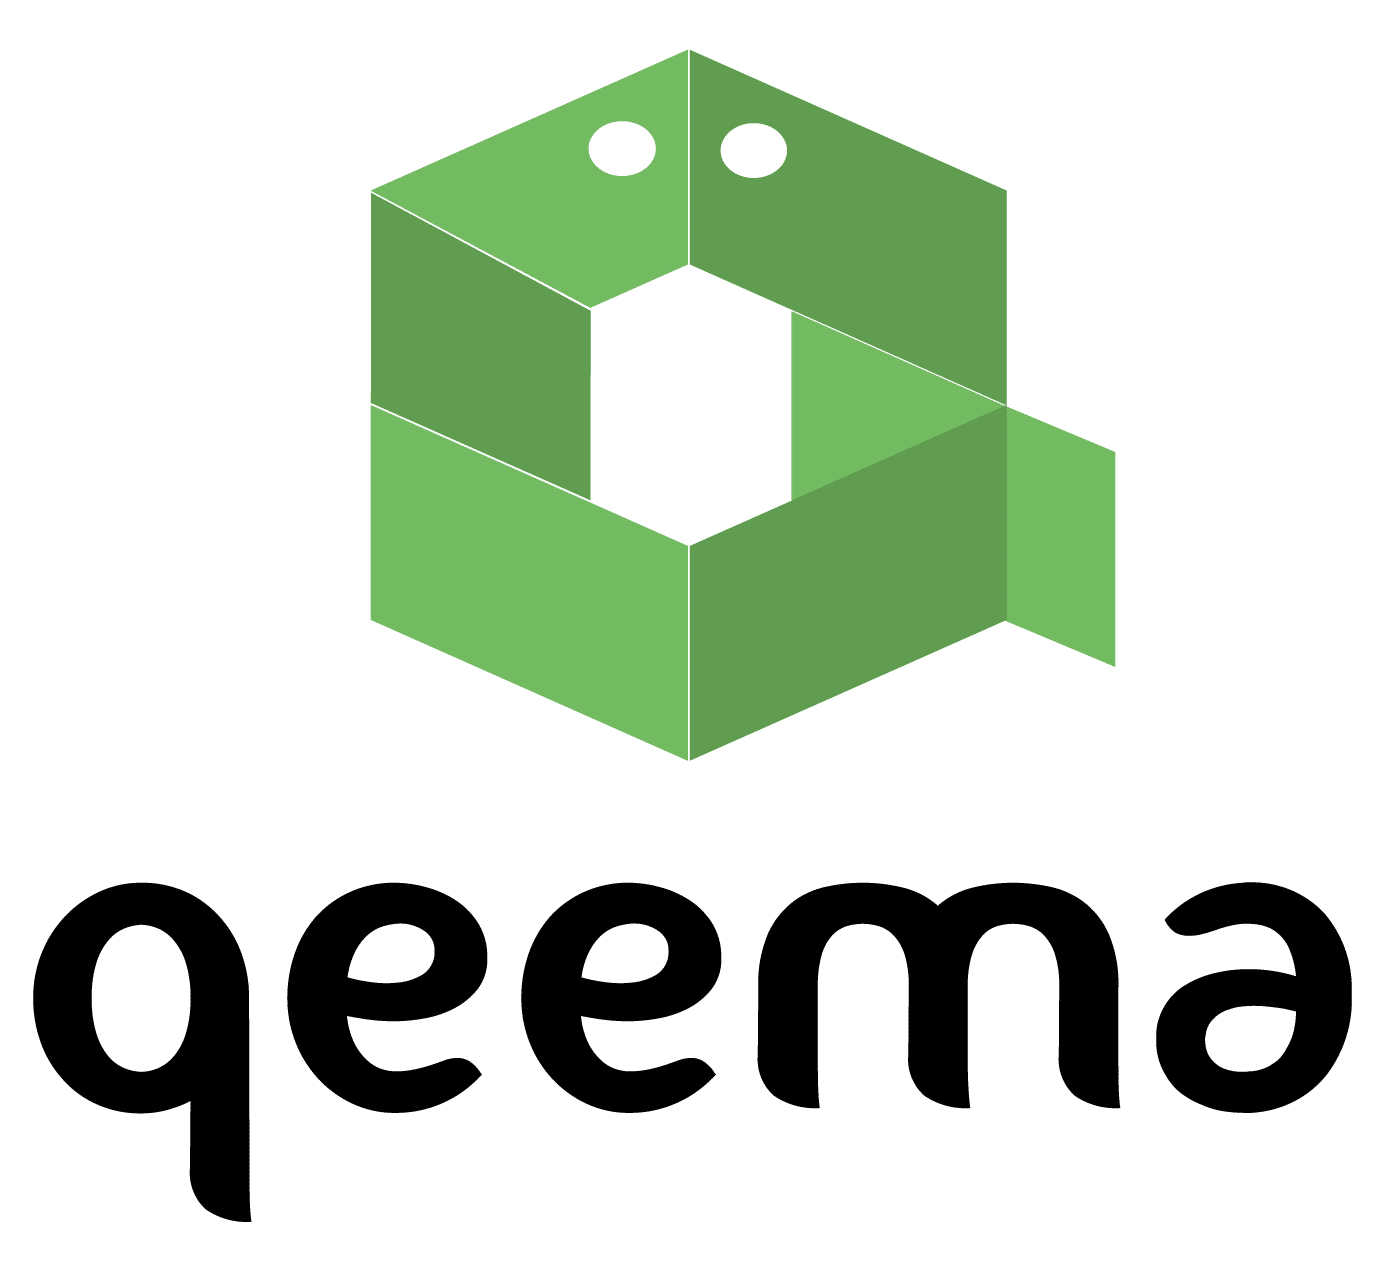 Qeema logo